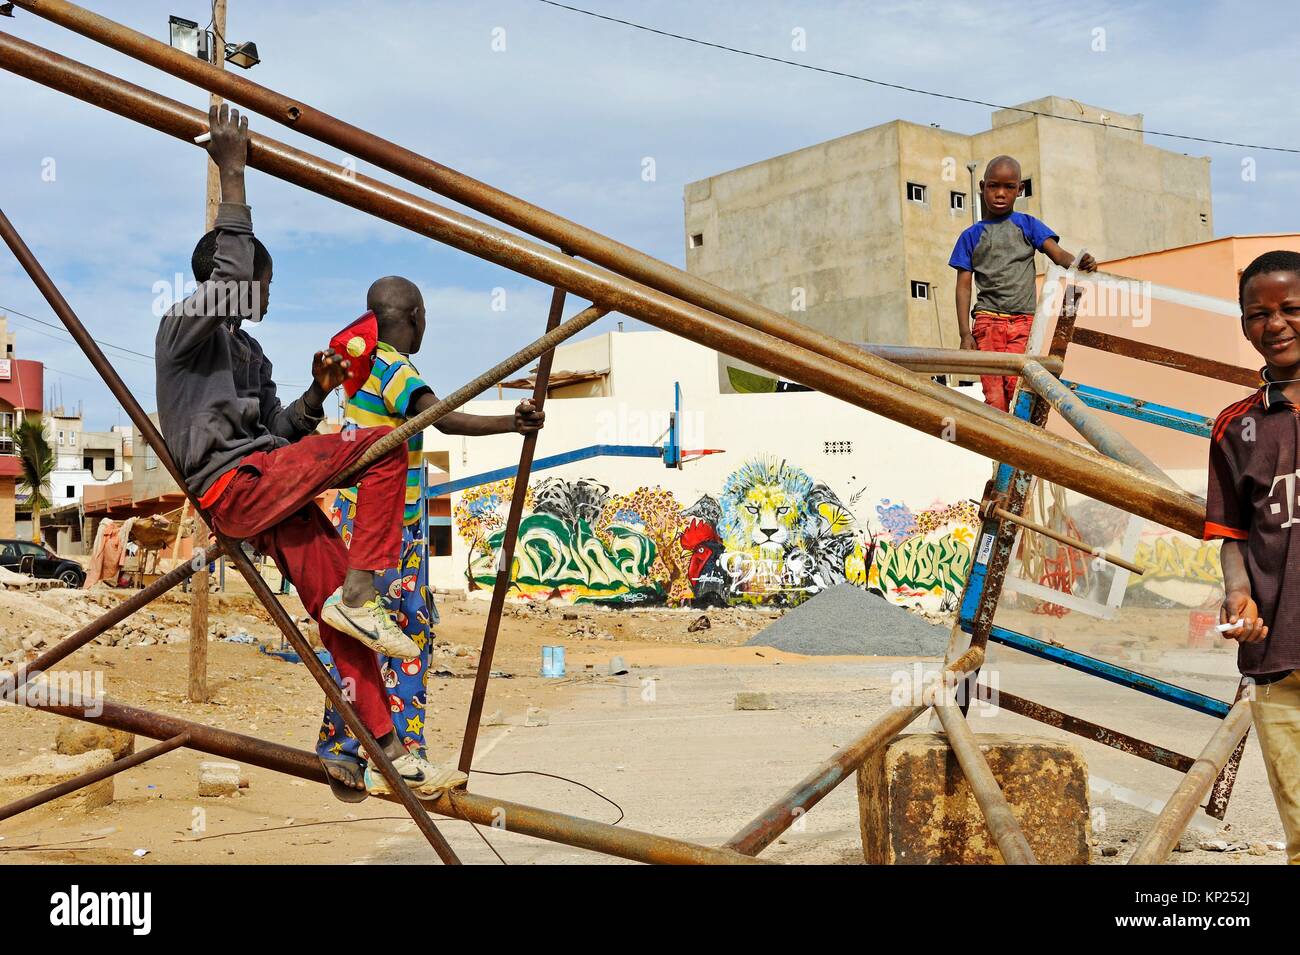 Jugendliche spielen in einer Baulücke von quakam Bezirk, Dakar, Senegal, Westafrika. Stockfoto